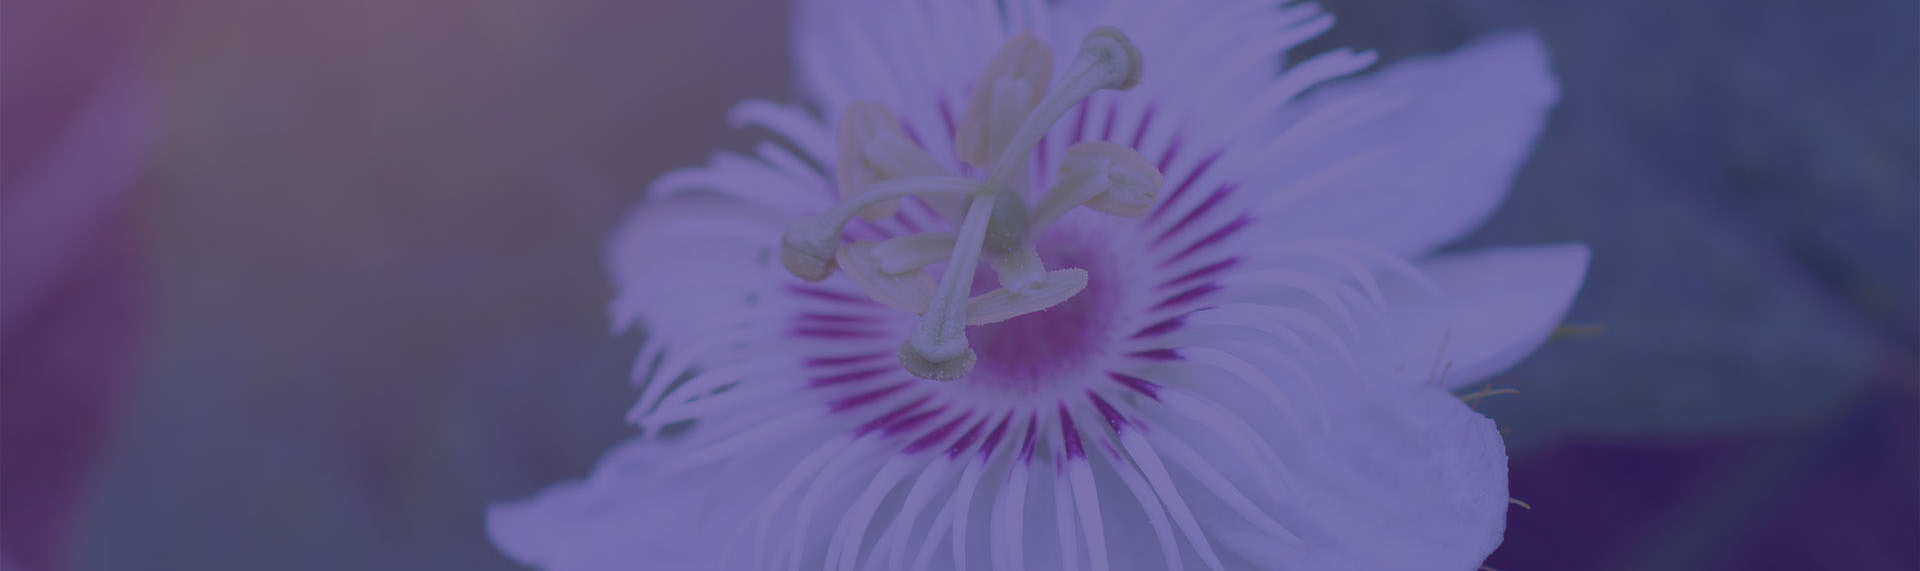 Image d'une fleur mauve